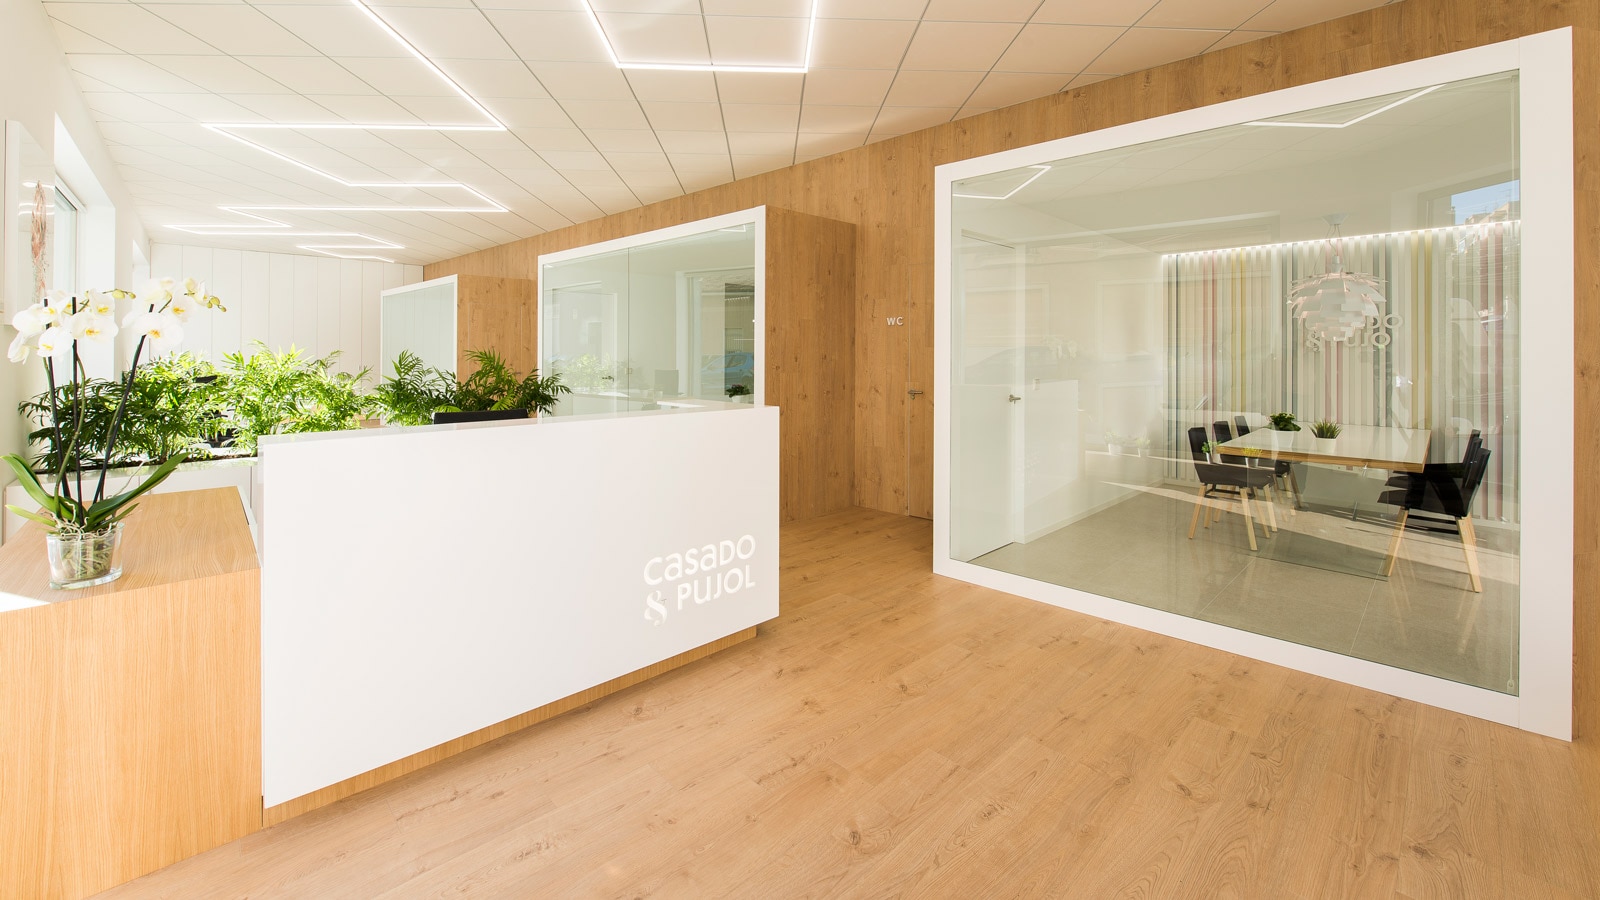 Проекты PORCELANOSA Grupo: Новый дизайн офисов Casado & Pujol в стиле джапанди